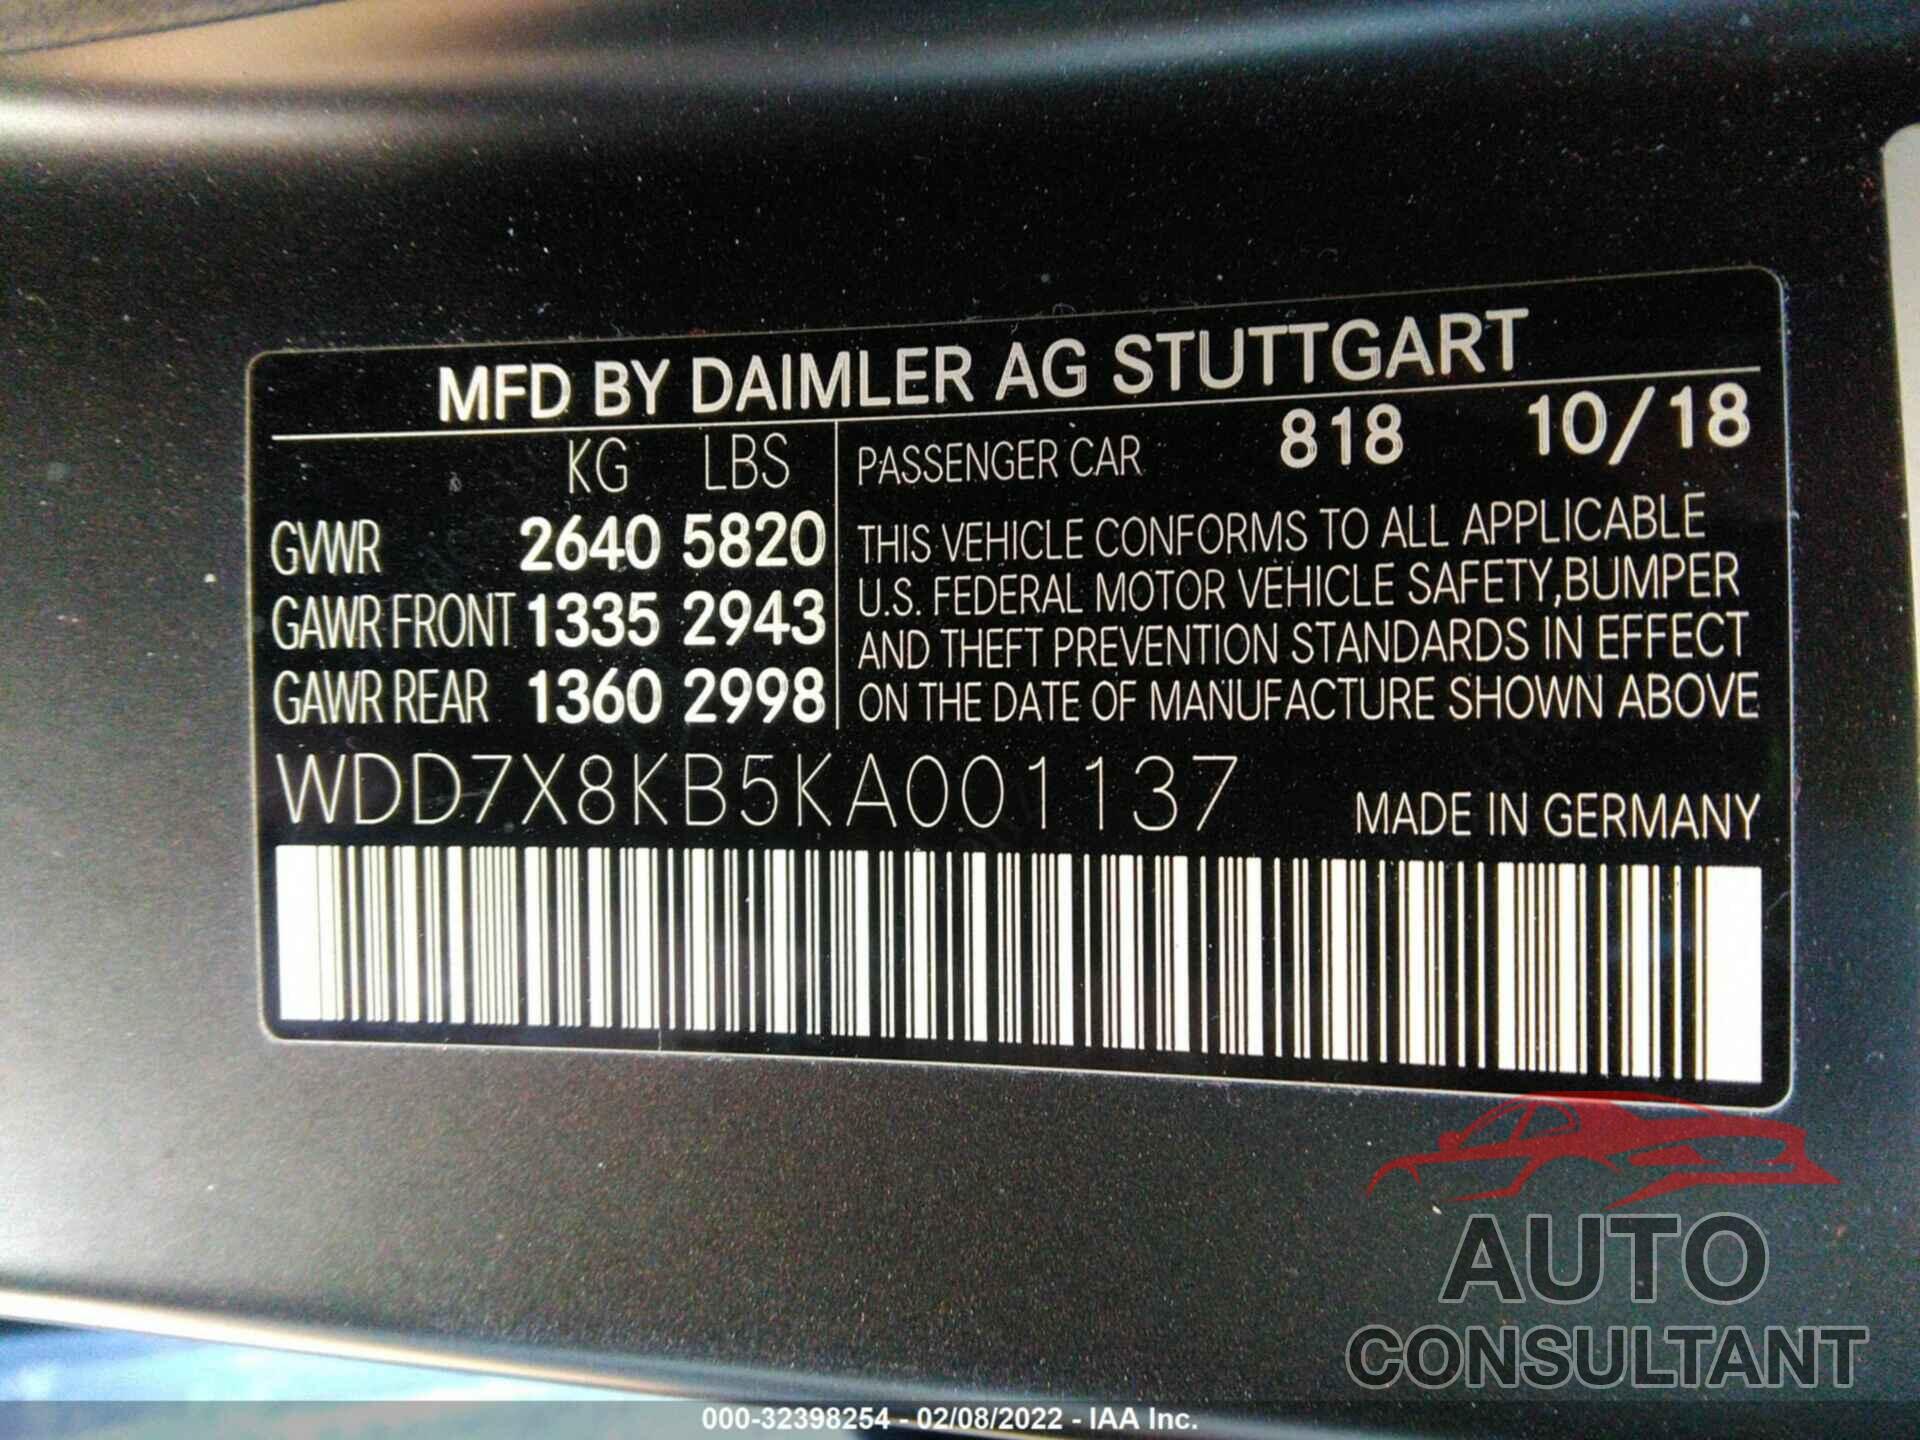 MERCEDES-BENZ AMG GT 2019 - WDD7X8KB5KA001137